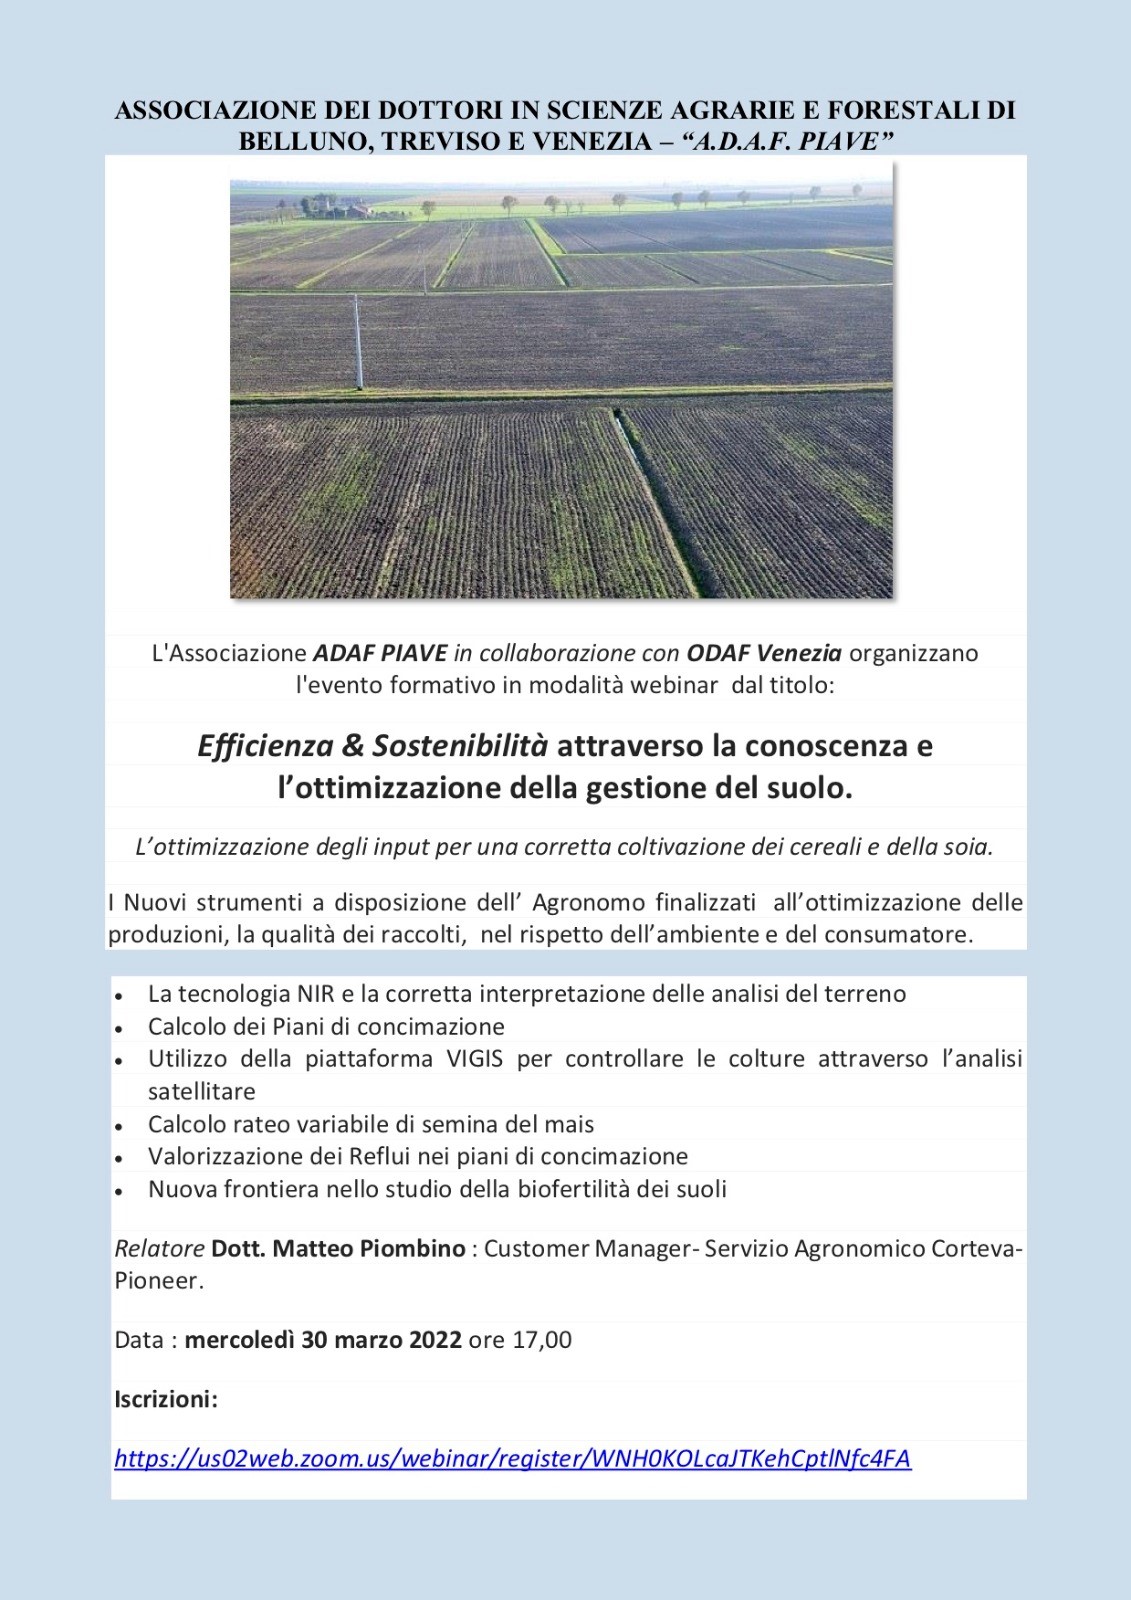 30 marzo 2022 – Webinar “Efficienza & Sostenibilità attraverso la conoscenza e l’ottimizzazione della gestione del suolo”